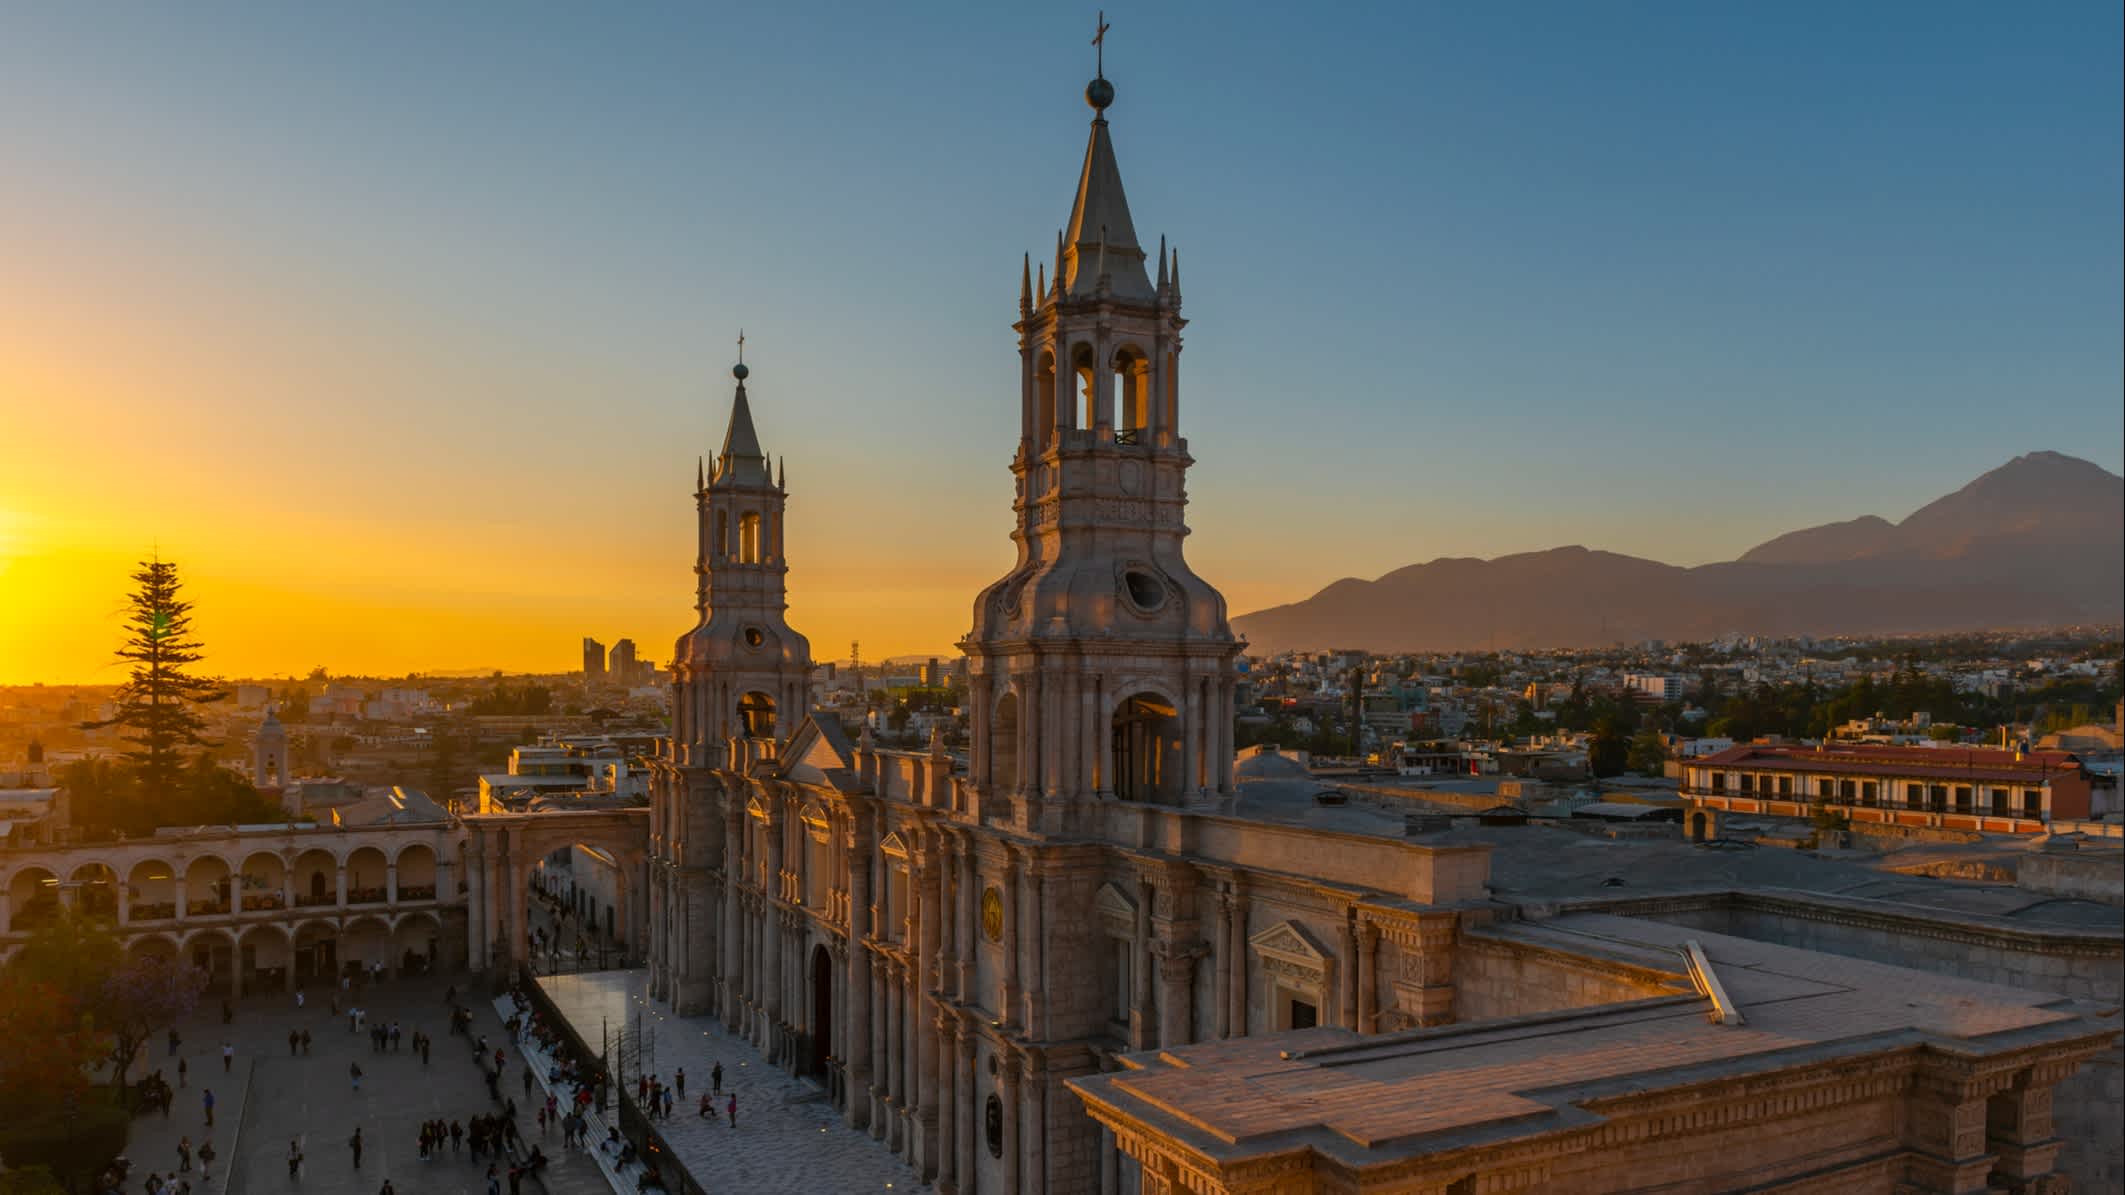 Stadtbild von Arequipa mit der katholischen Kathedrale und dem Hauptplatz Plaza de Armas in den Anden von Peru.